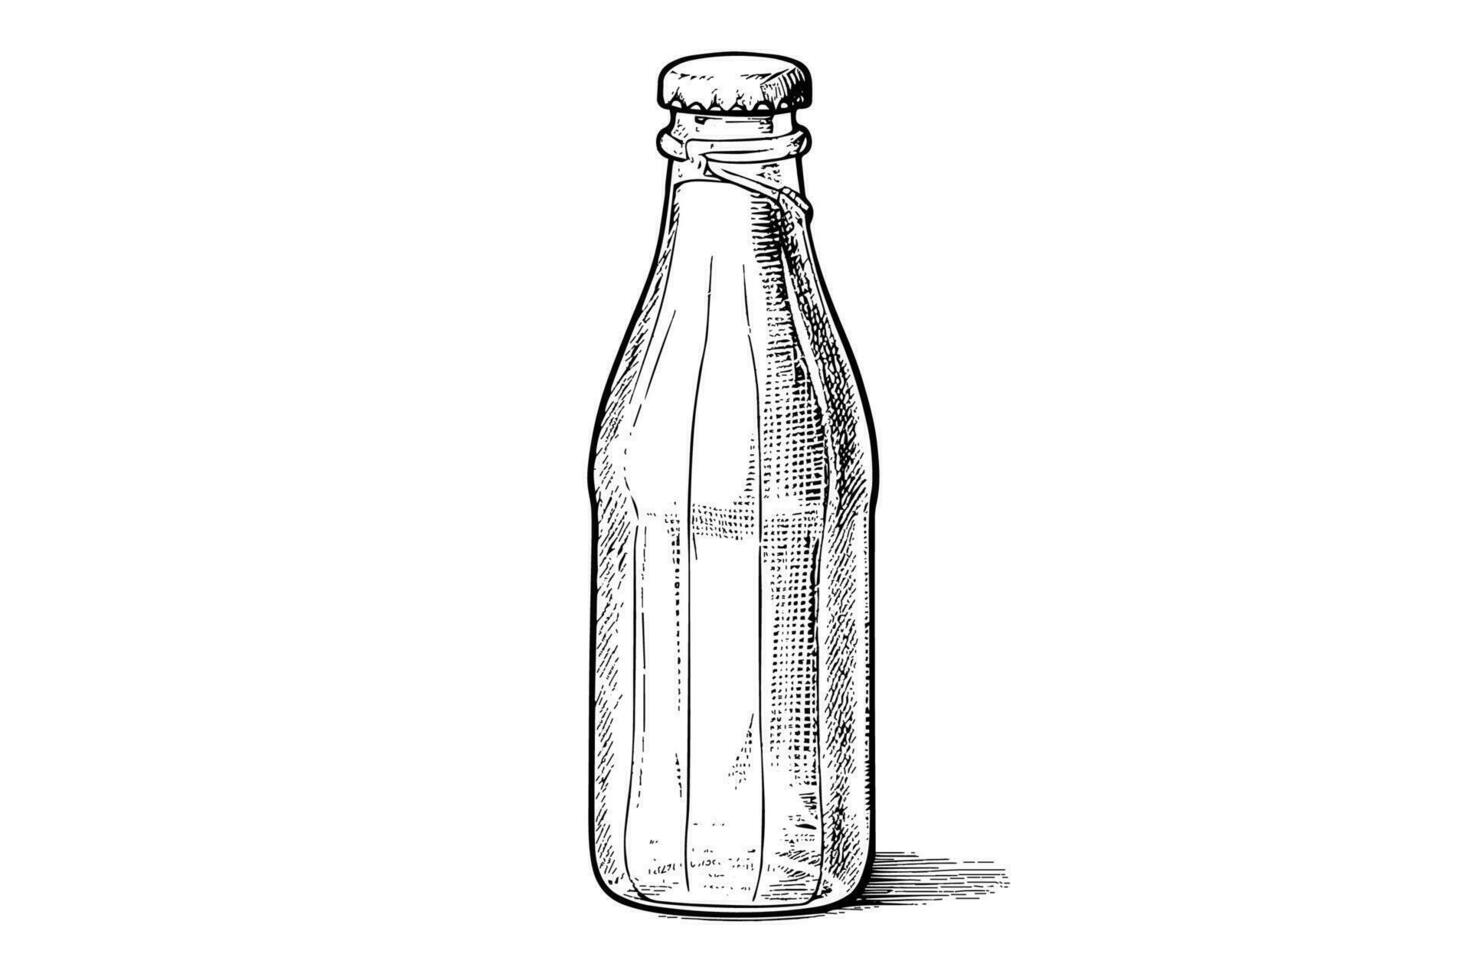 vidro garrafa do refrigerante. tinta esboço do Cola mão desenhado vintage vetor ilustração